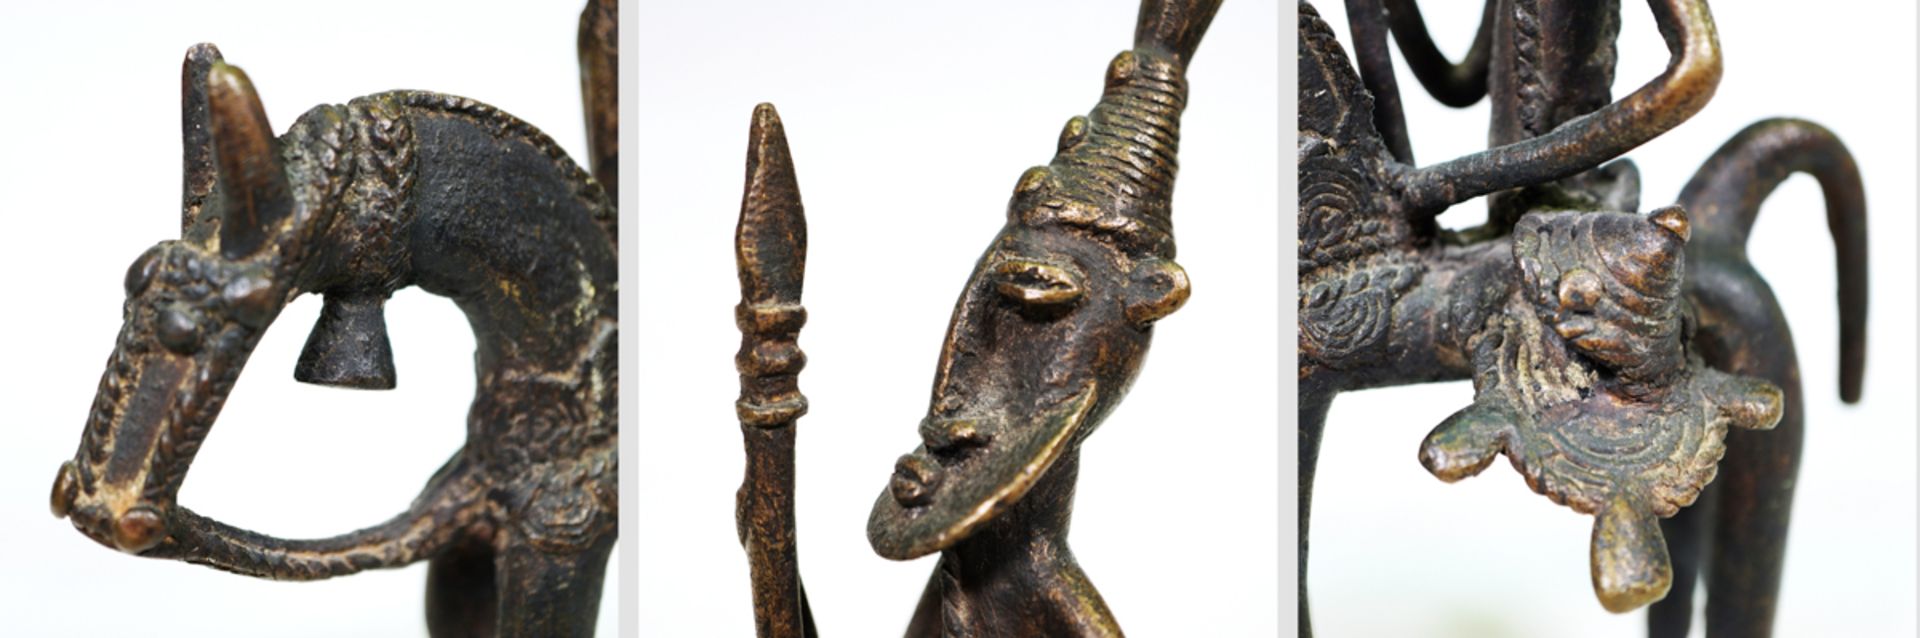 Reiterfigur, Volk der Dogon, Mali - Image 3 of 3